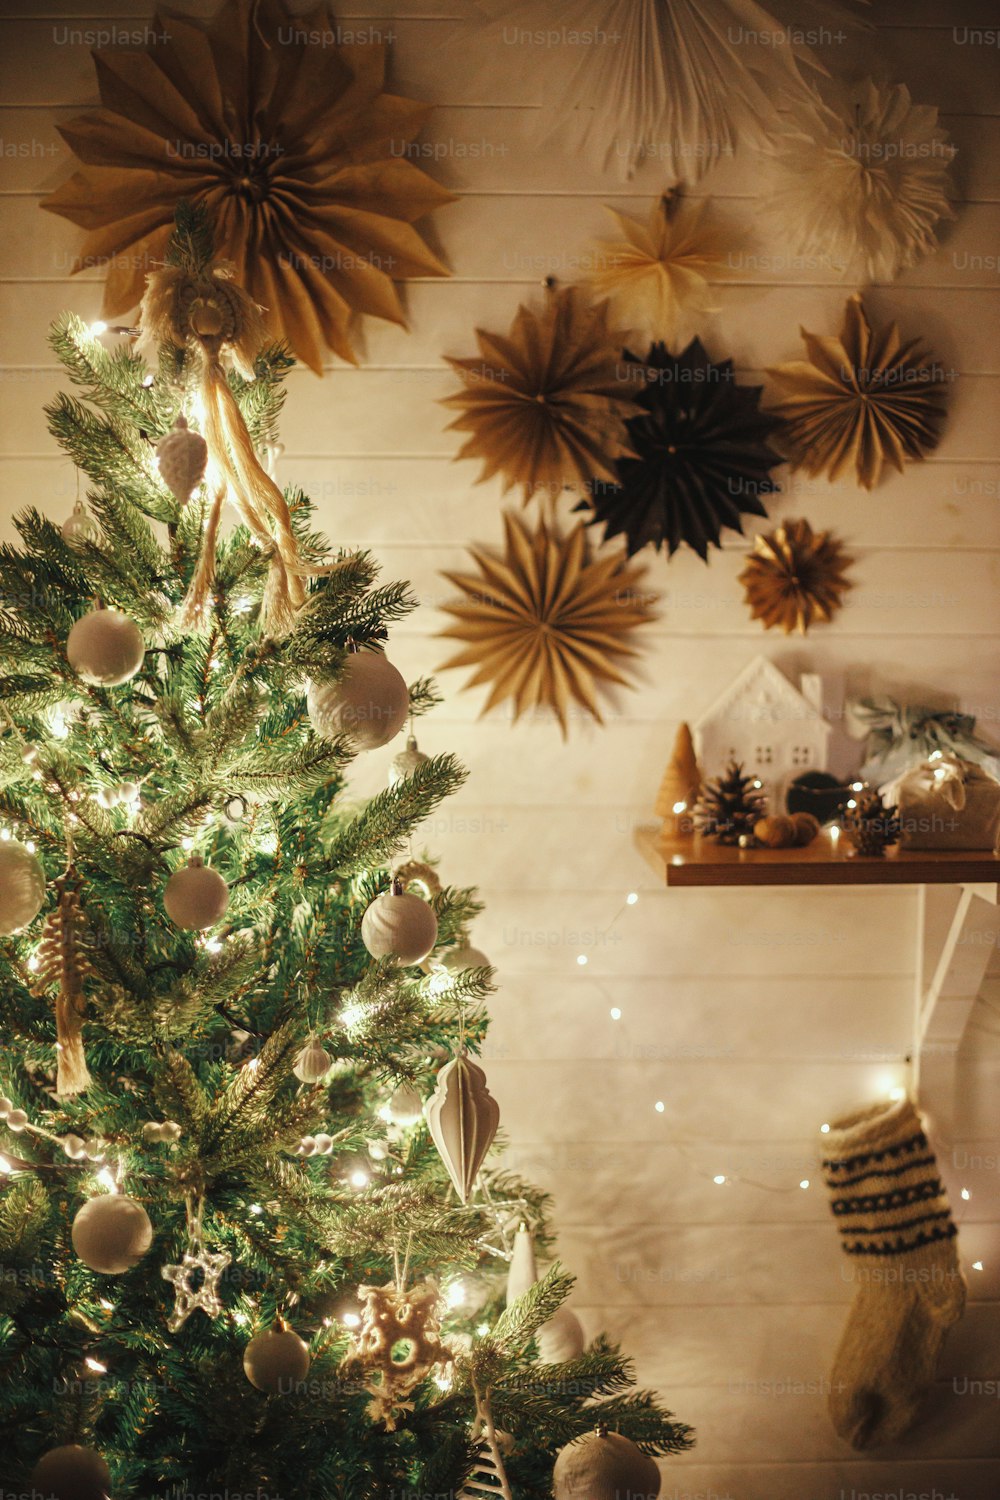 Elegante árbol de Navidad decorado con adornos blancos modernos, adornos bohemios y luces doradas sobre fondo de estrellas de papel en la pared y media. Ambiente festivo escandinavo ambiente. Tiempo mágico